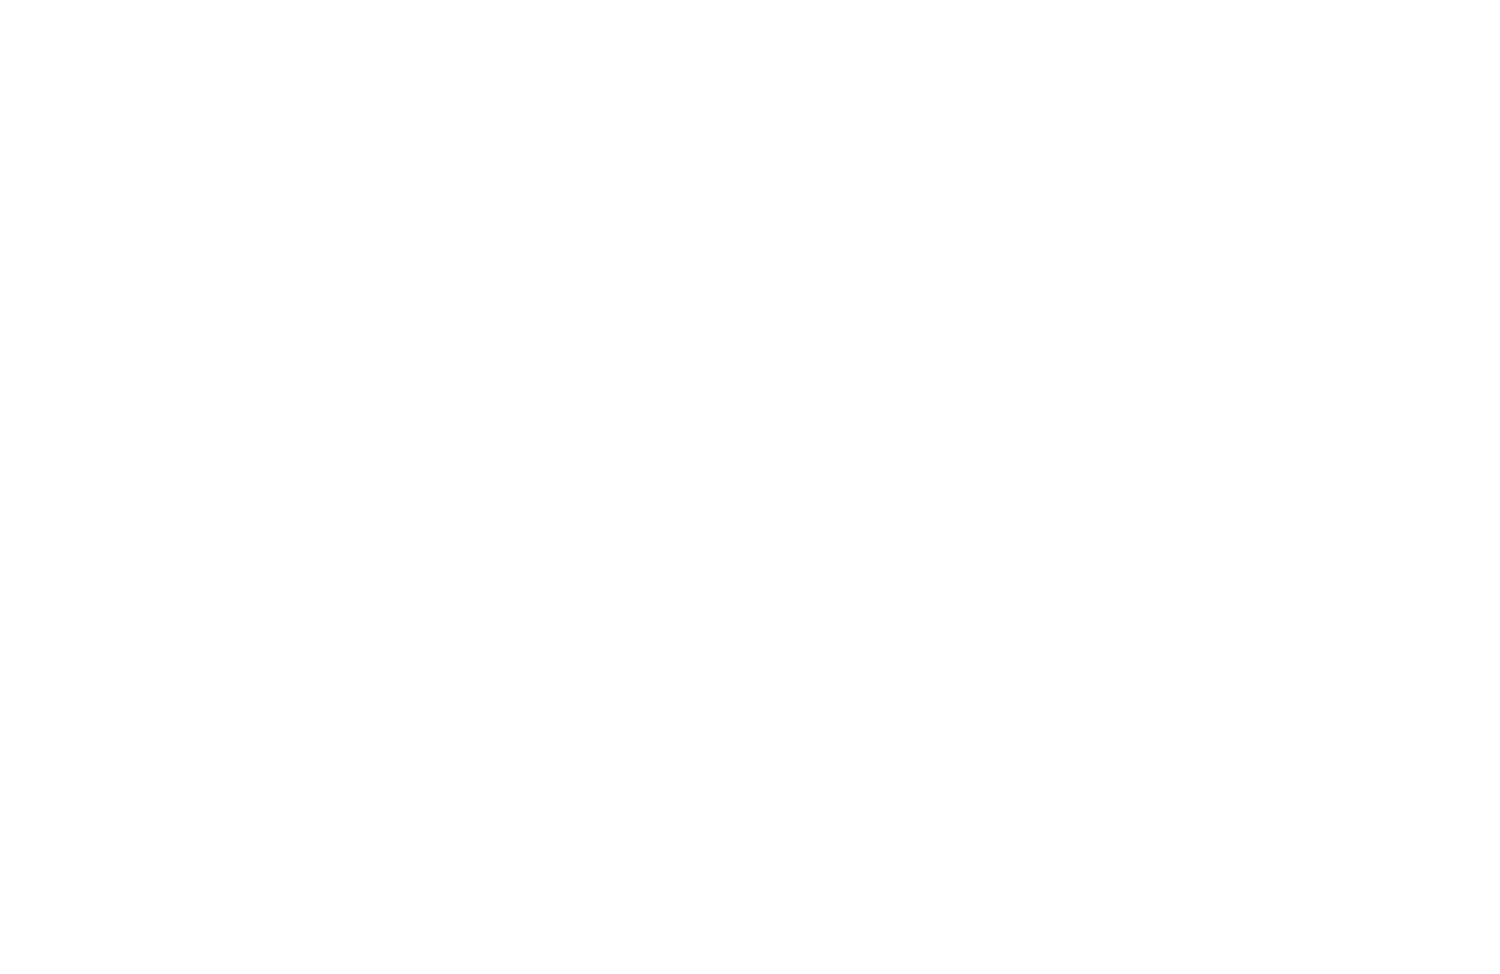 Baucom Robotics